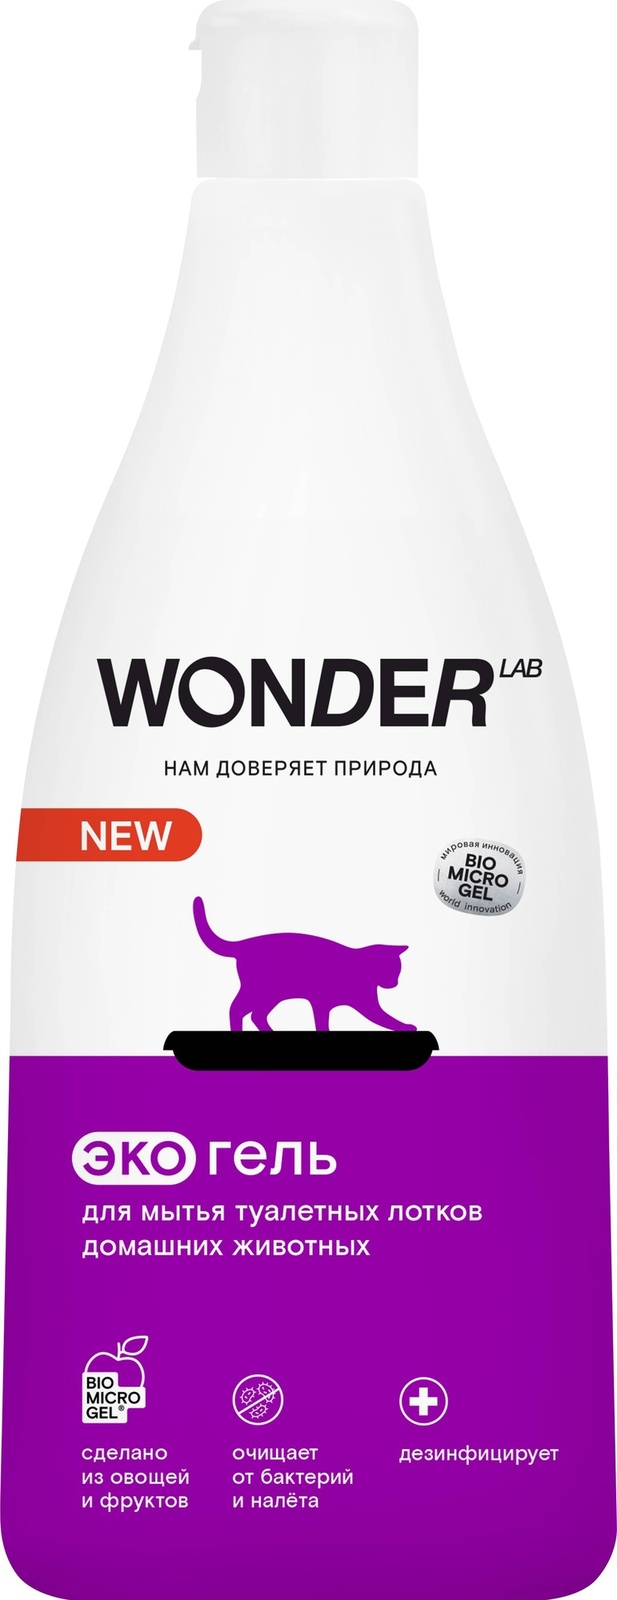 Wonder lab средство для мытья лотков домашних животных, экологичный гель без запаха, 550 мл (586 г) Wonder lab средство для мытья лотков домашних животных, экологичный гель без запаха, 550 мл (586 г) - фото 1